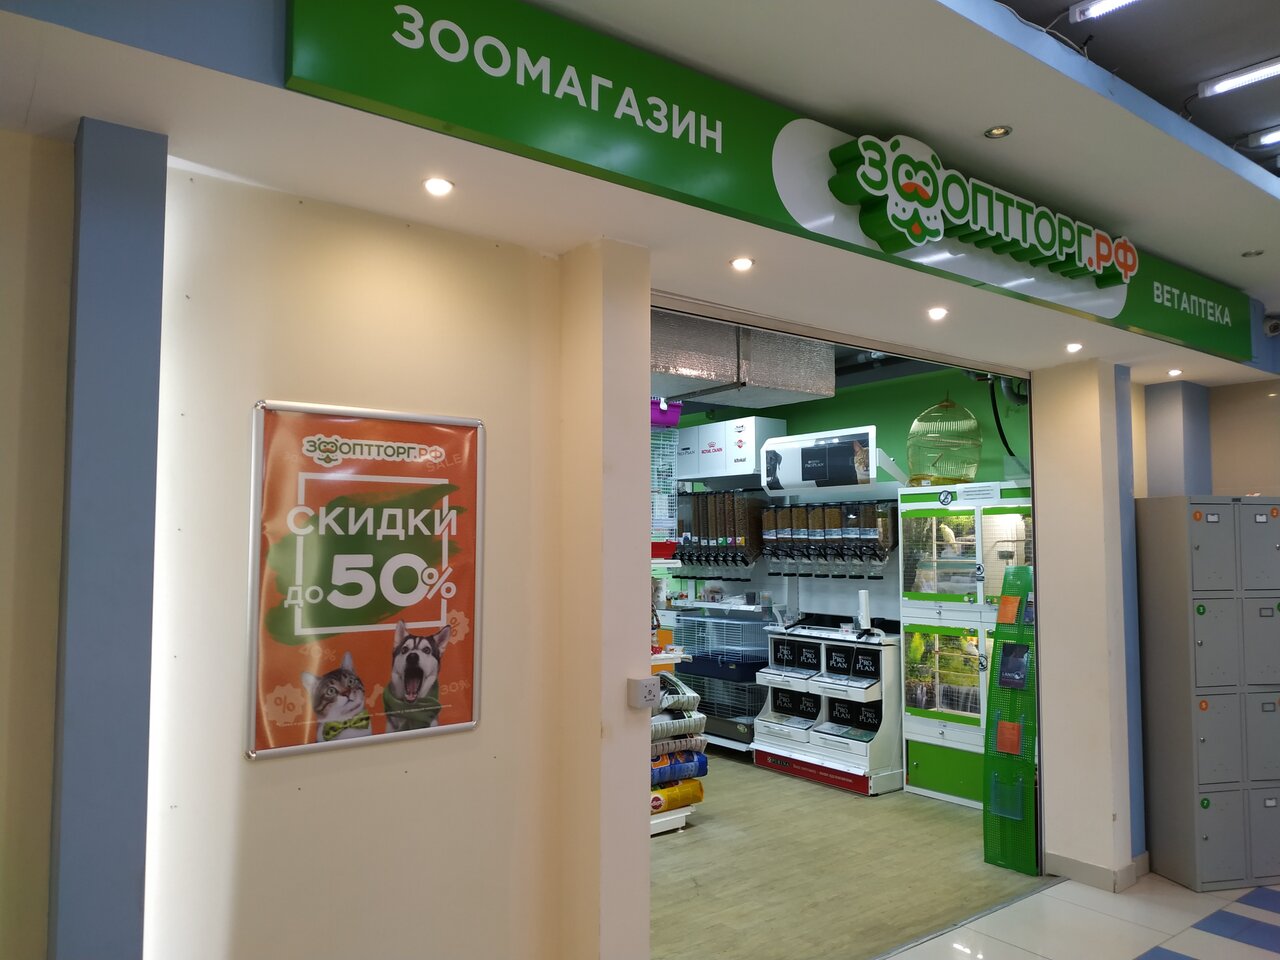 Зоооптторг Интернет Магазин Нижний Новгород